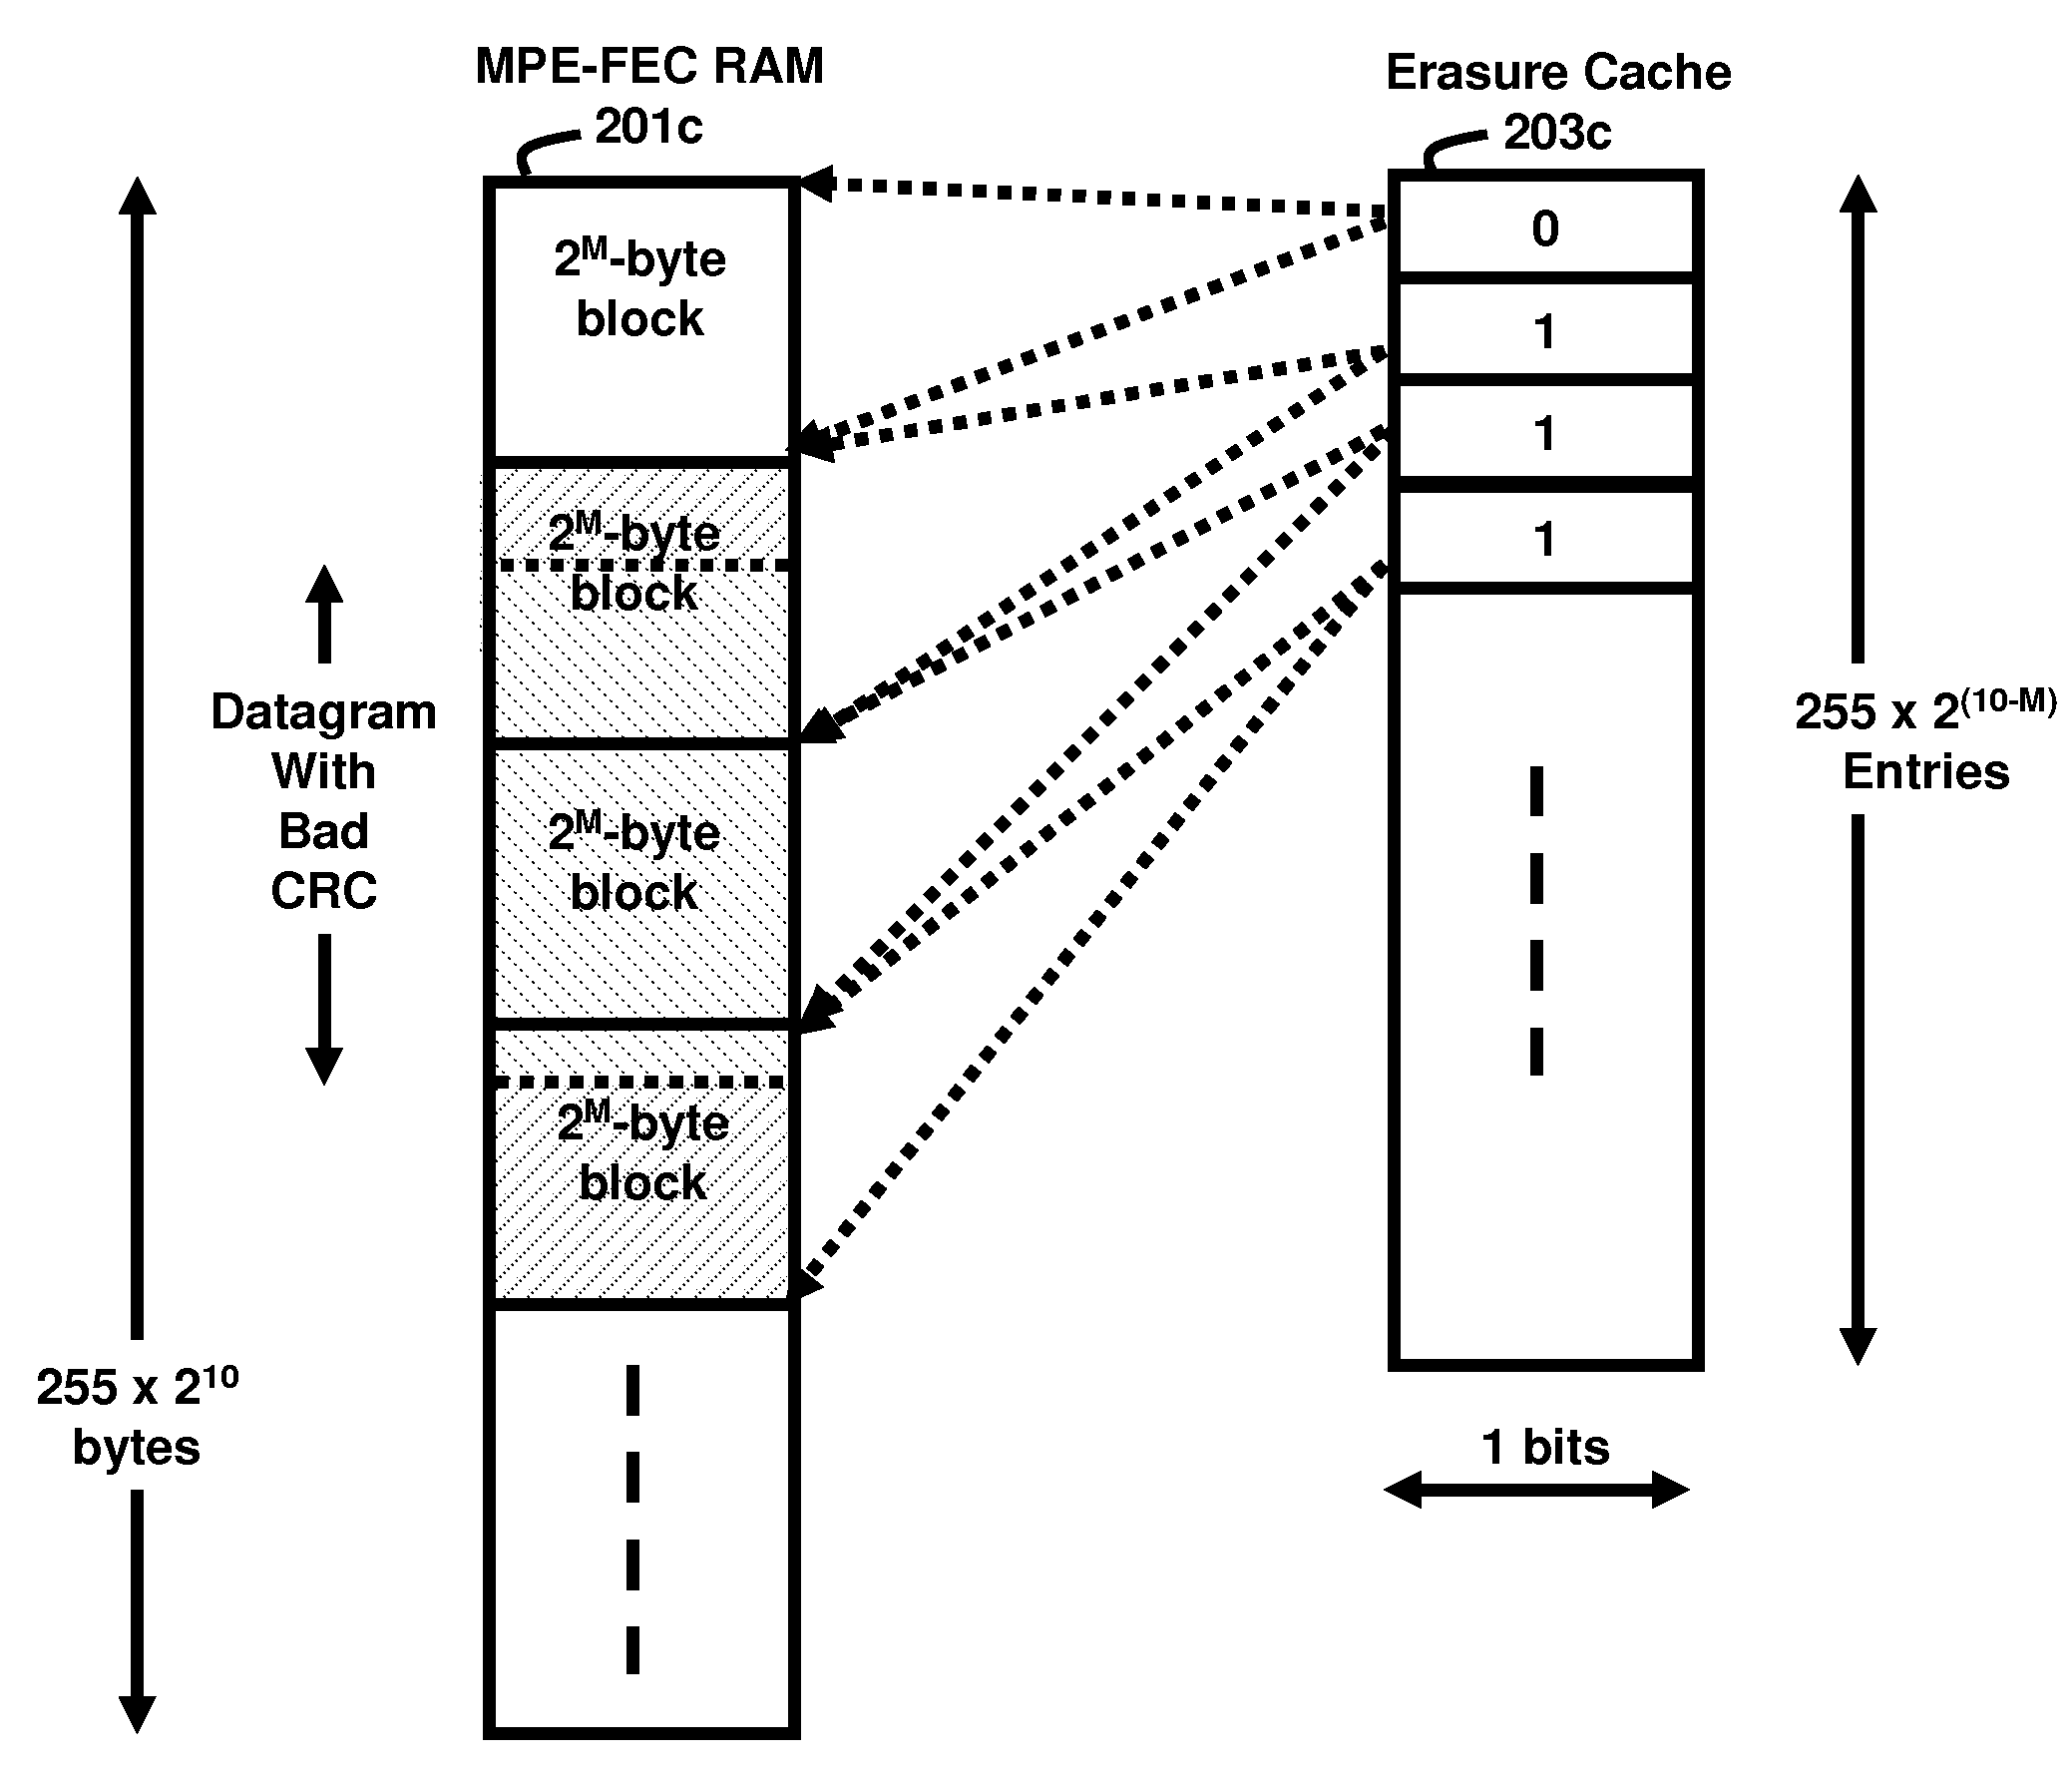 Compact mpe-fec erasure location cache memory for dvb-h receiver